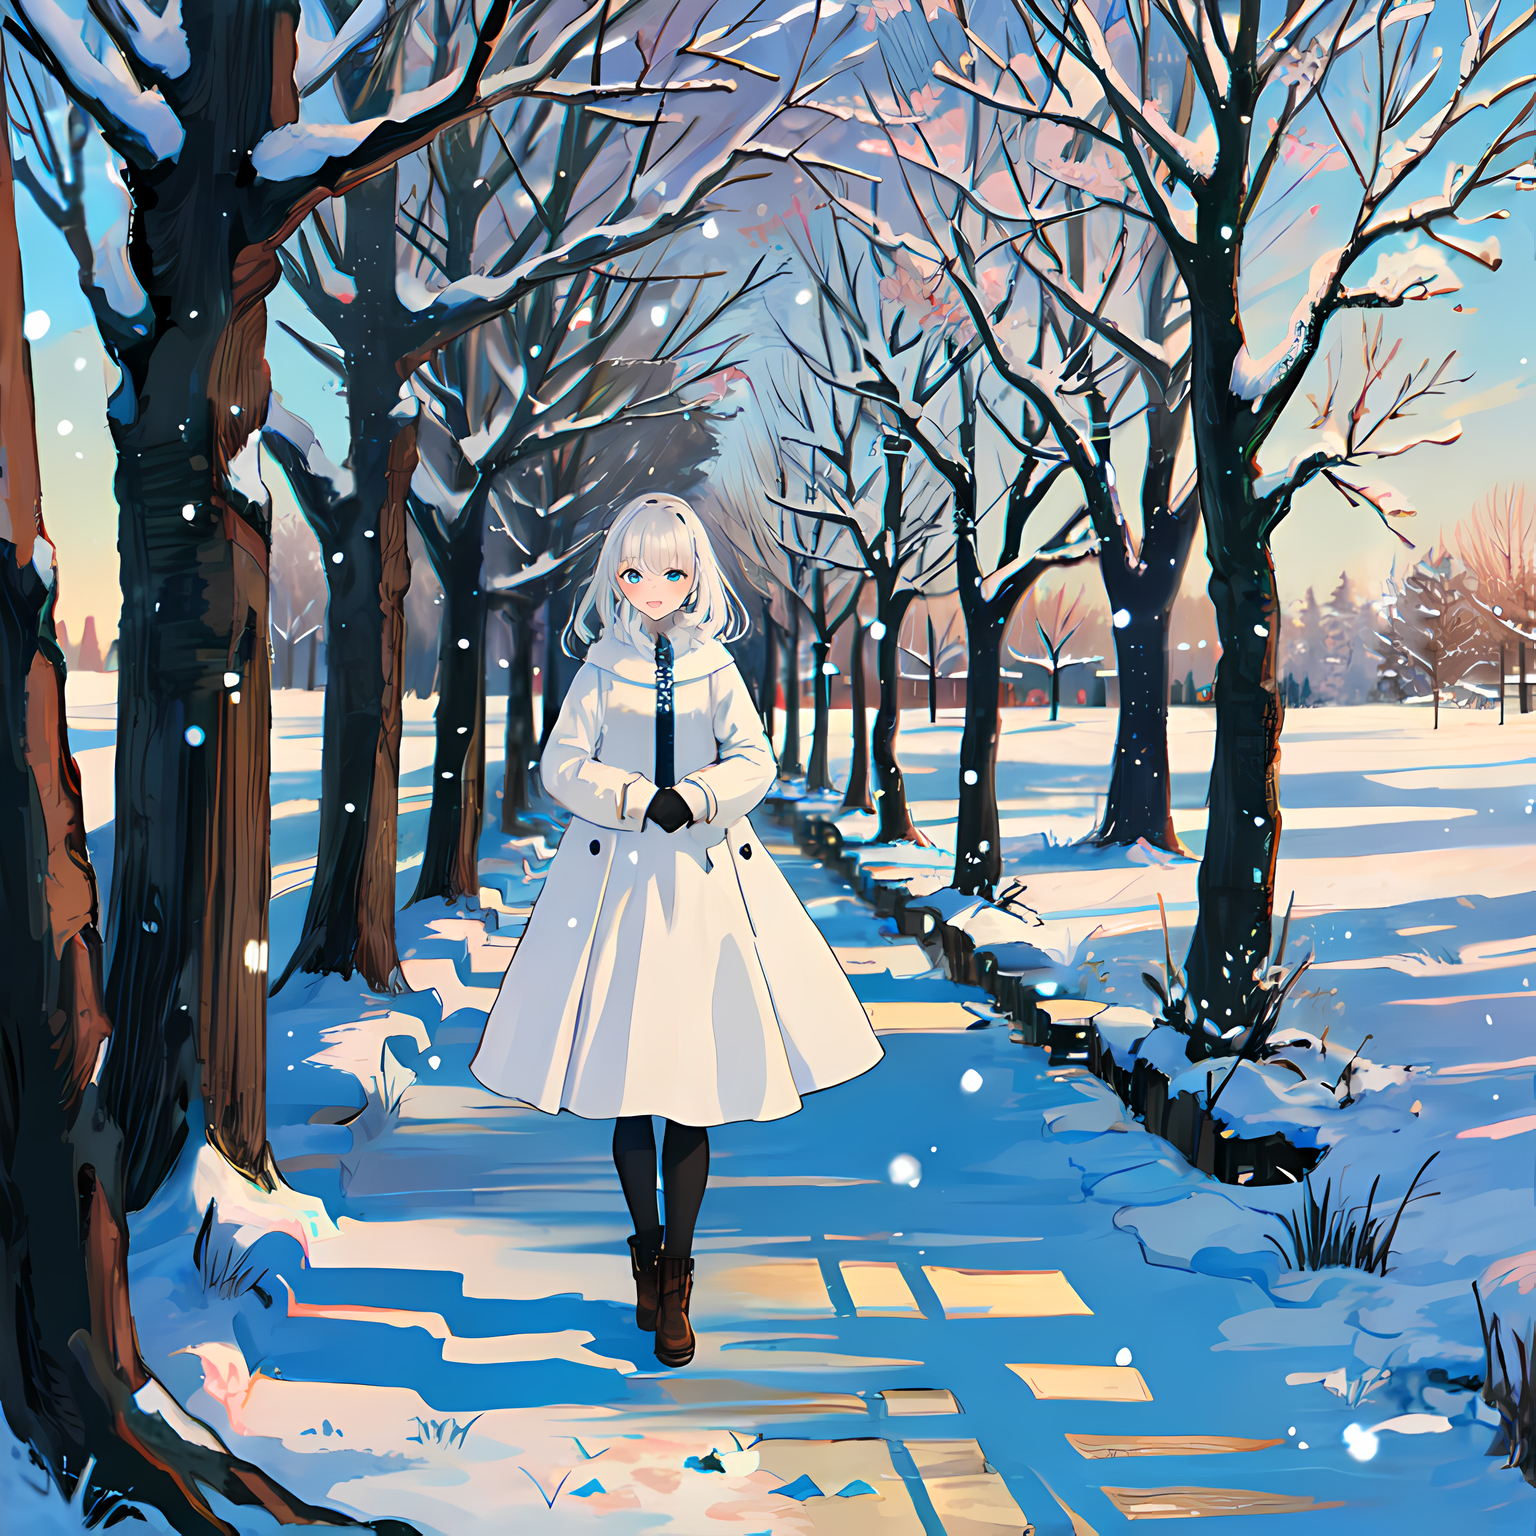 冬日裸枝下，少女独立湖畔，笑容浮现。插画图片壁纸